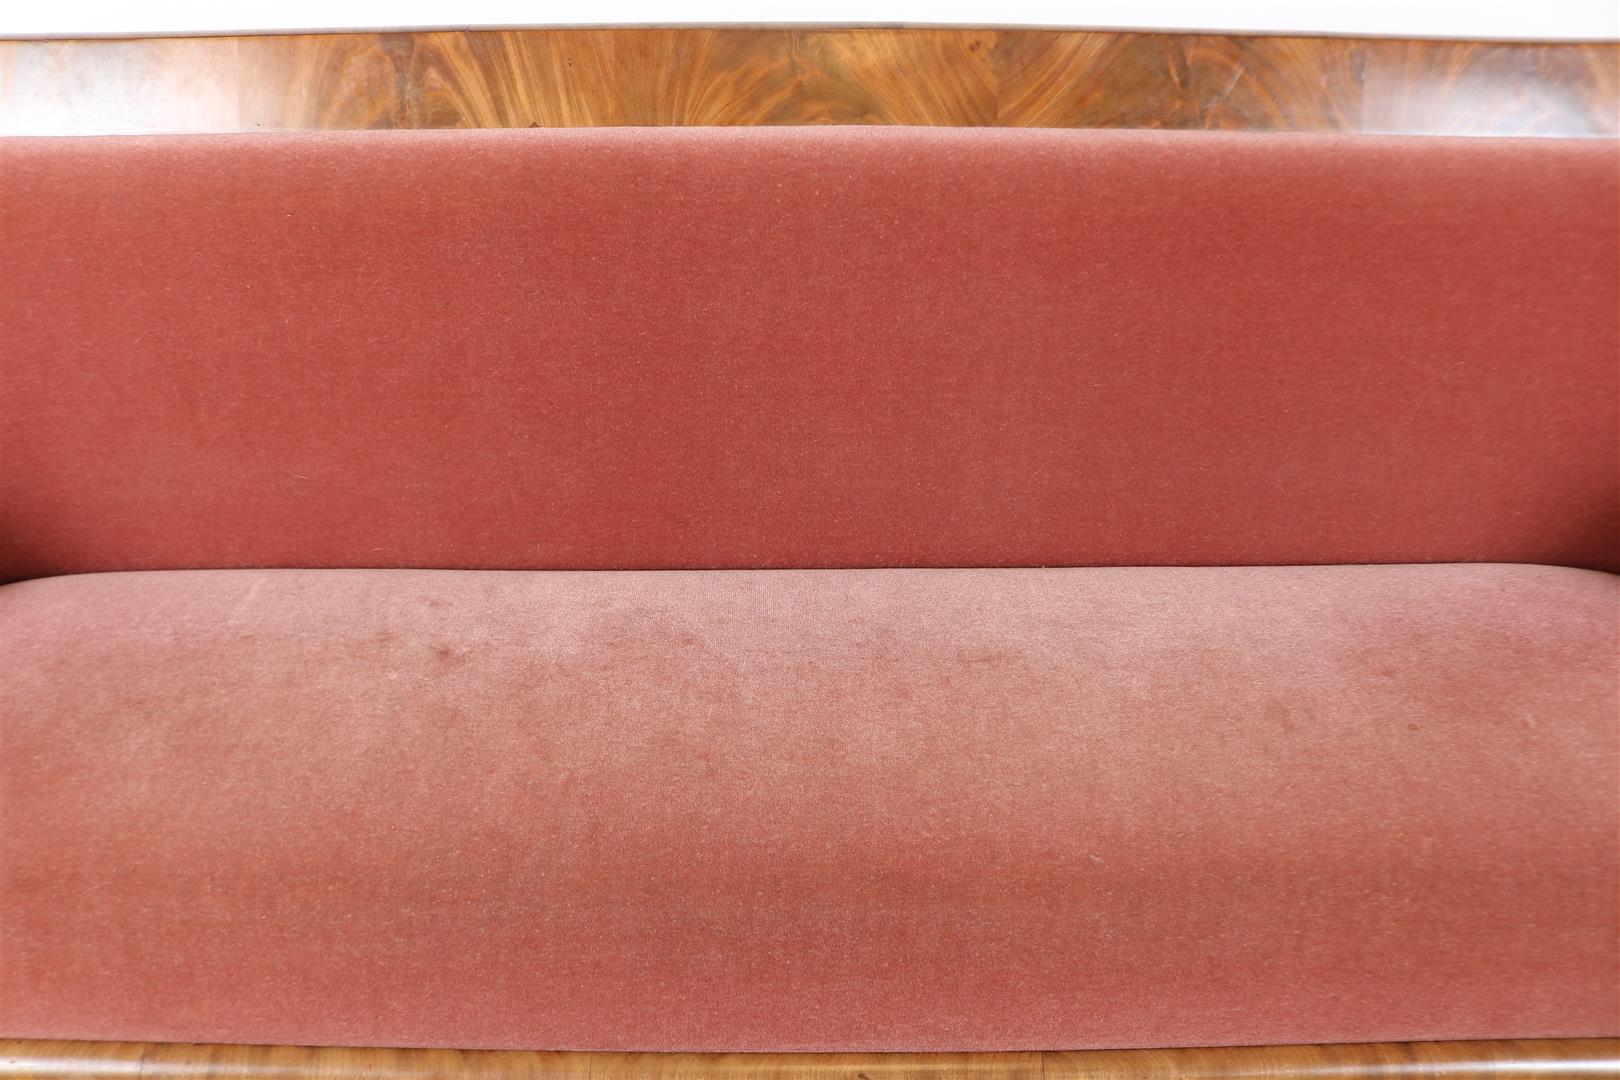 Mahogany Biedermeier sofa upholstered in pink velvet, 19th century. - Image 2 of 5